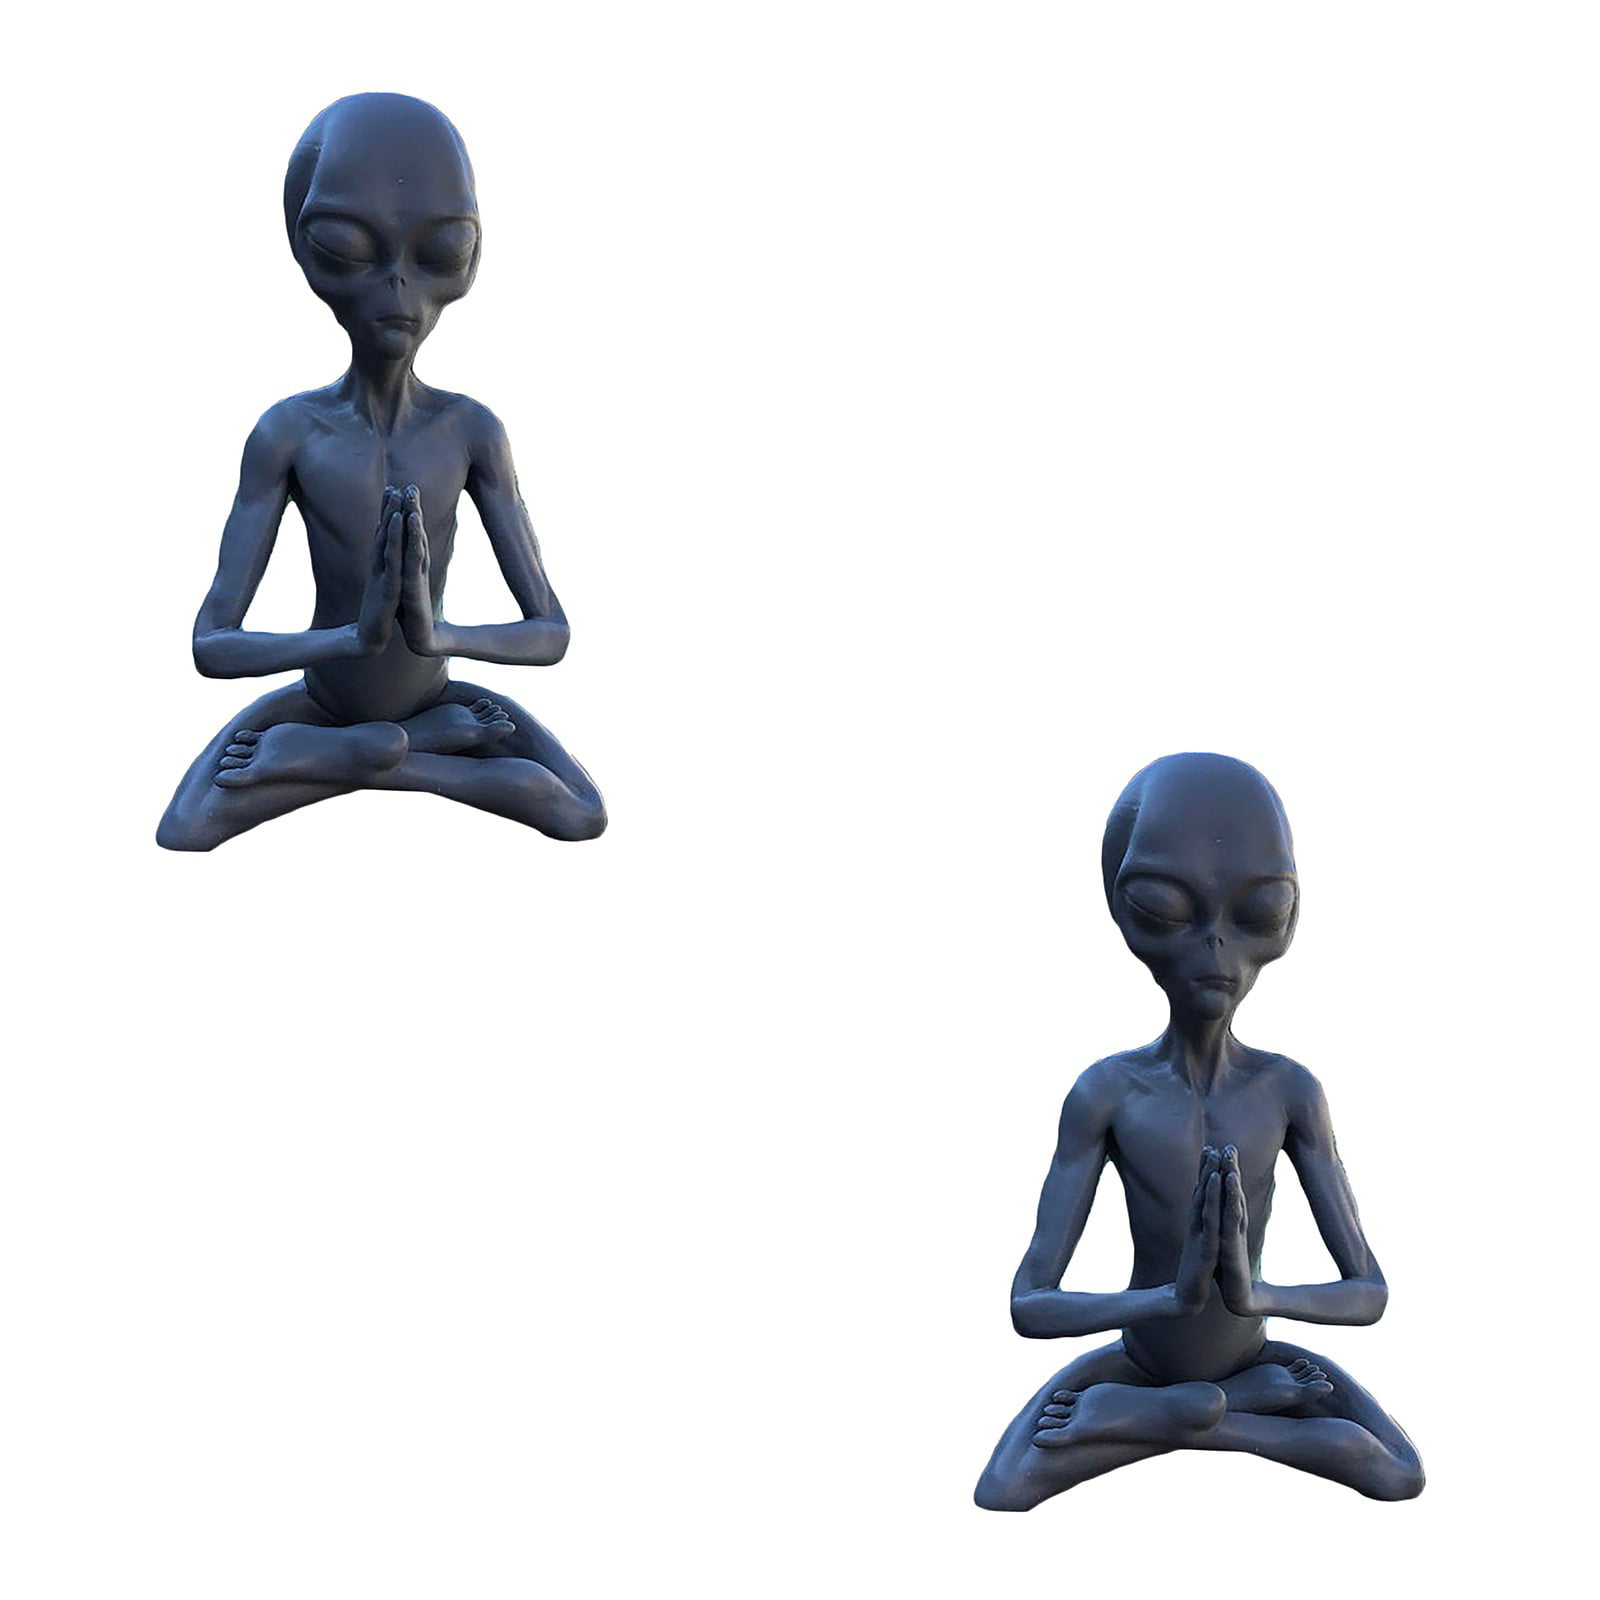 Bestomrogh Meditating Alien Statue Best Art Decor Alien Sculpture Moulds for Indoor Outdoor Home or Office 1pc Resin Garden Ornaments Outdoor 